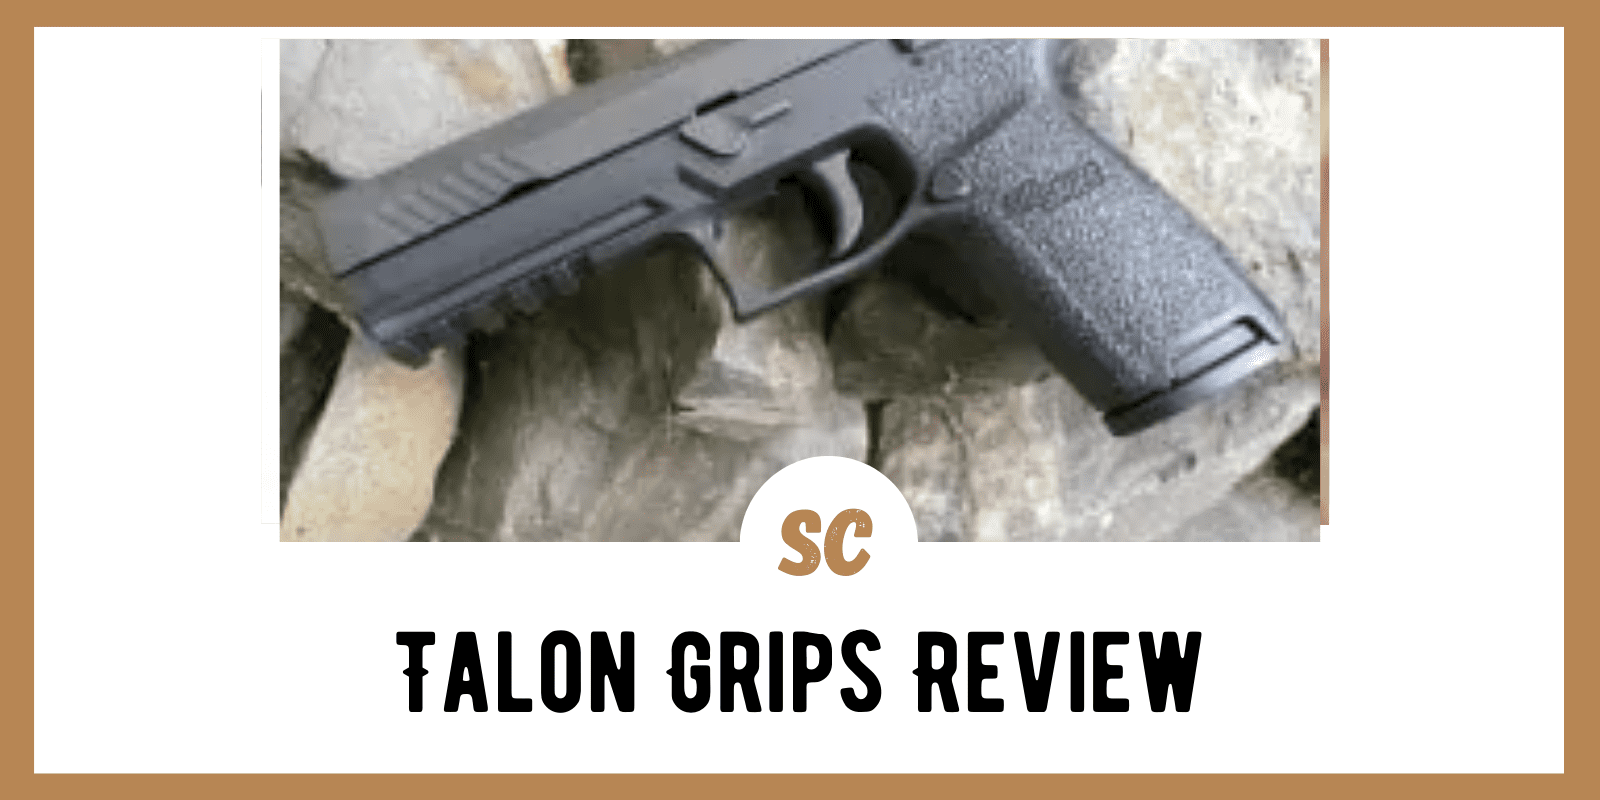 Survival Gear Review: Talon Grips Review